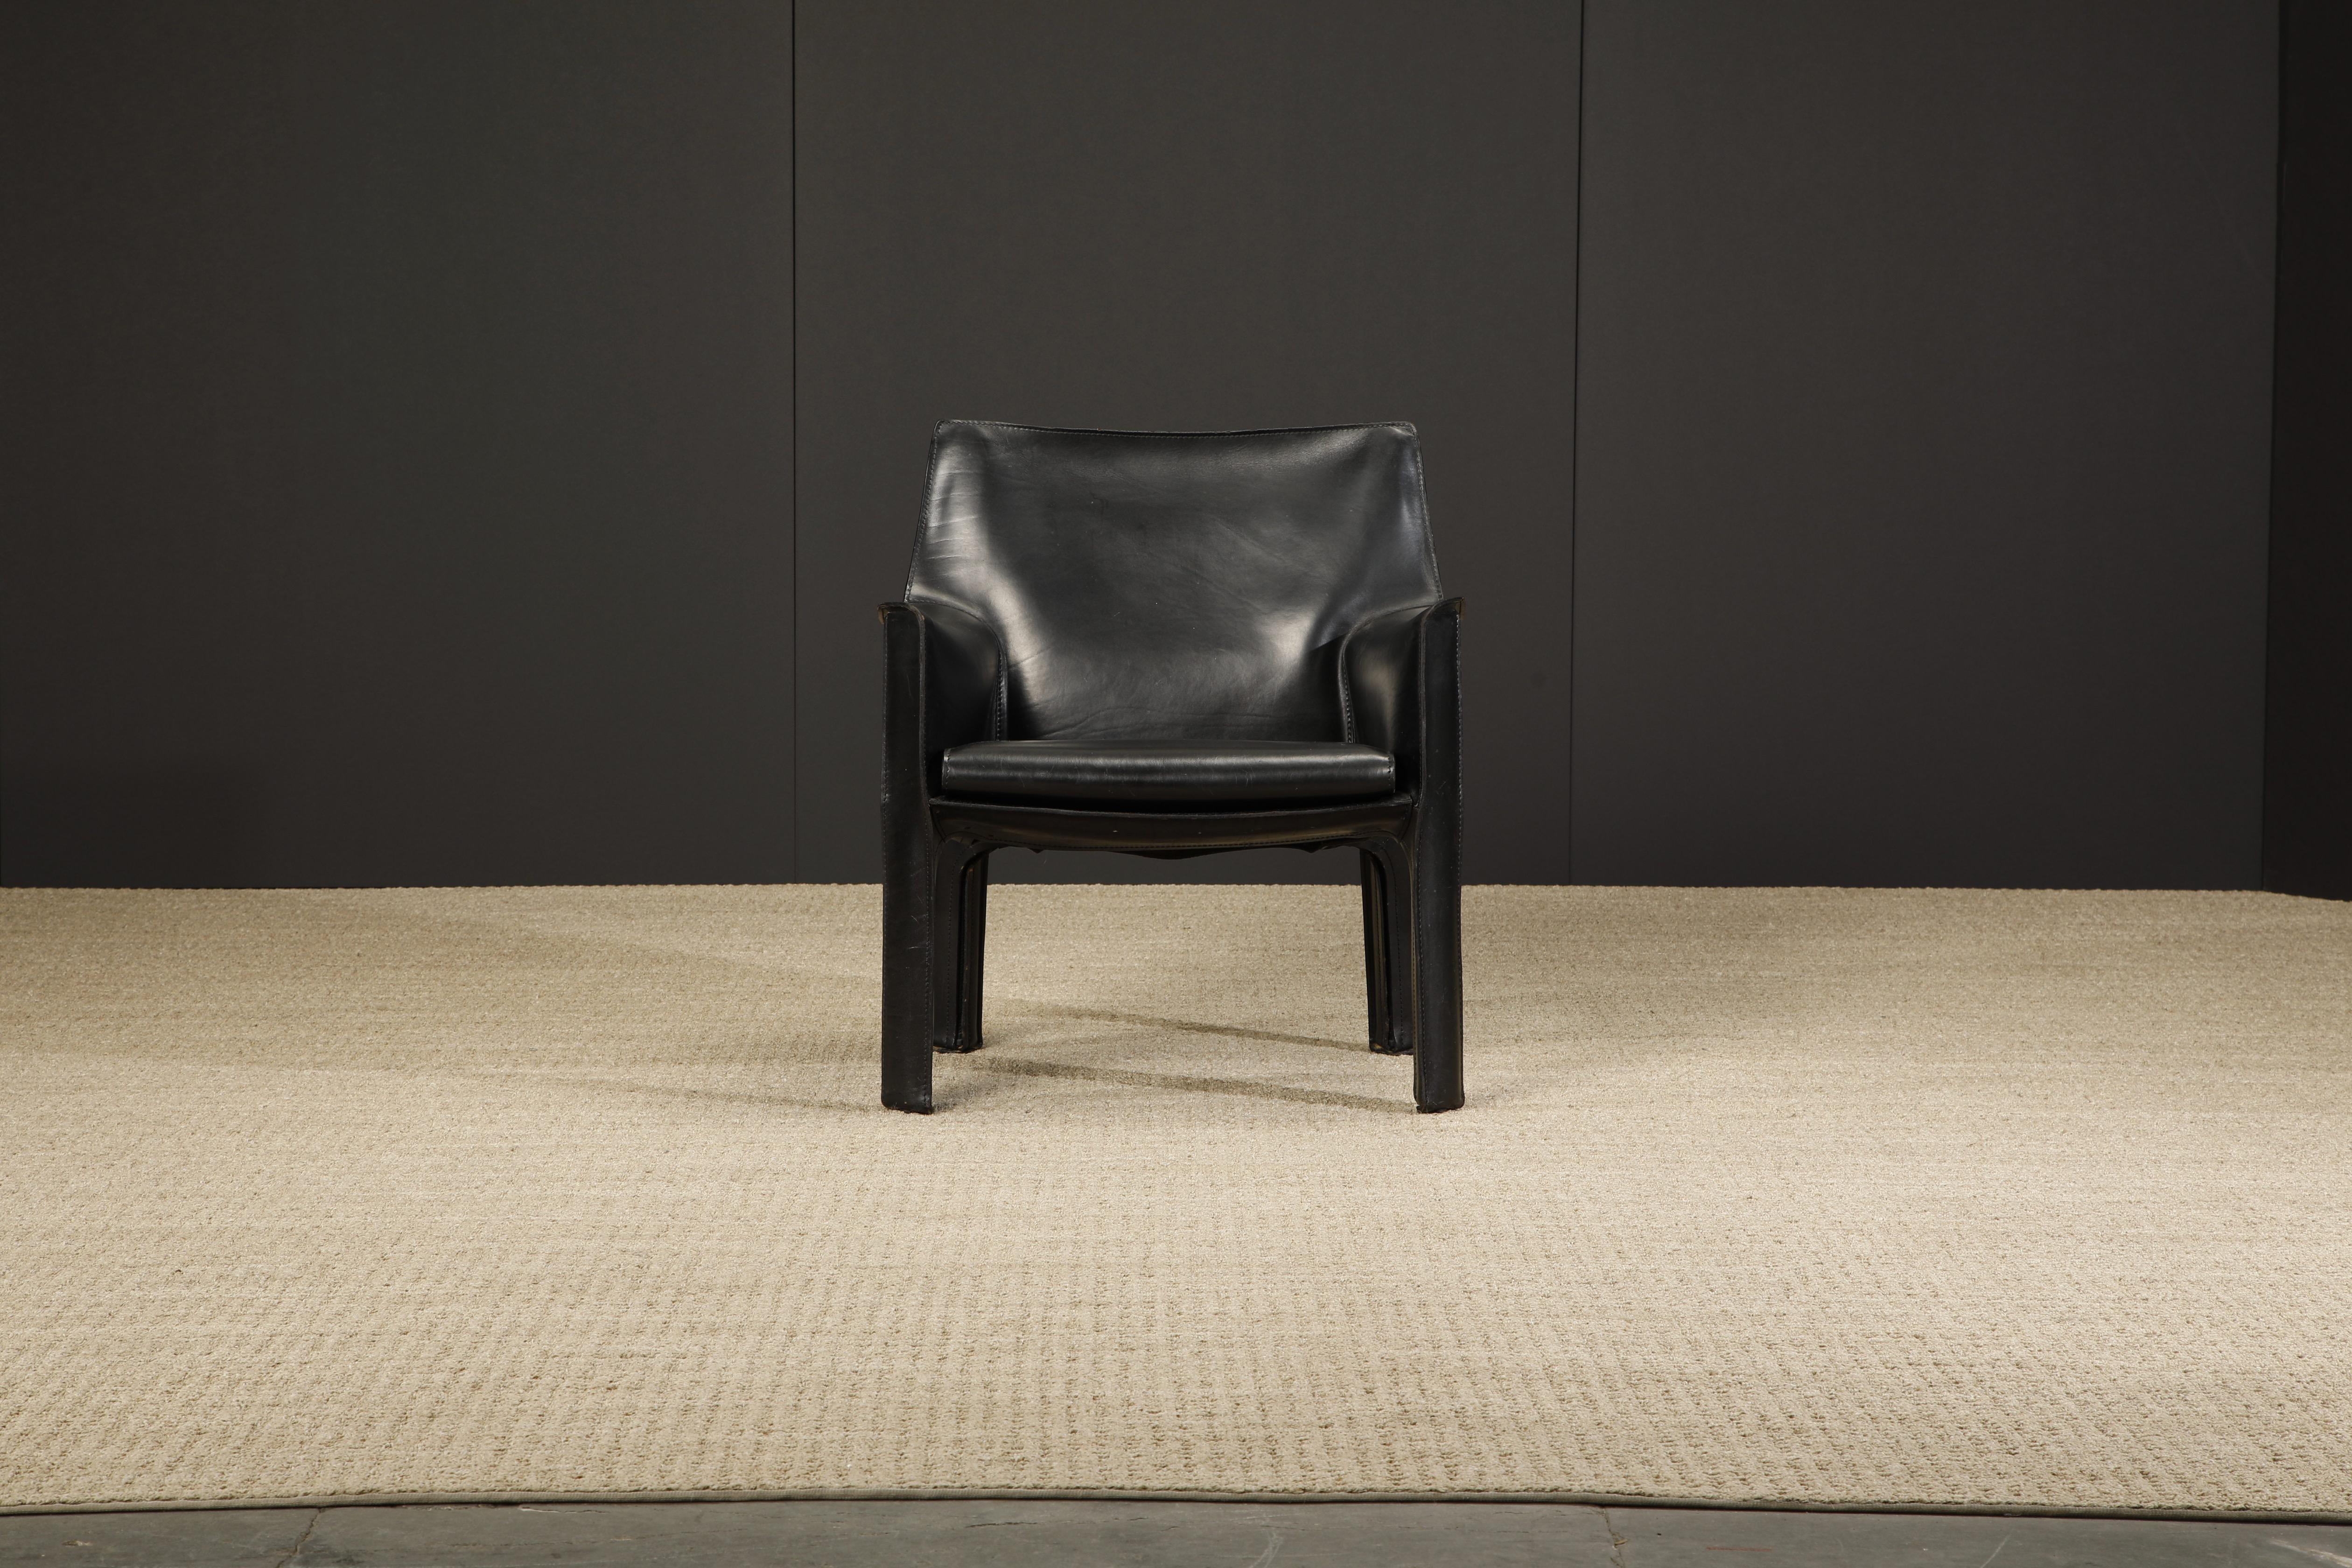 Un magnifique fauteuil de salon en cuir noir Mario Bellini Cab, Modèle #414, signé Cassina, conçu dans les années 1970. Ces beaux exemples de la ligne cab de Mario Bellini pour Cassina sont des classiques pour les designers d'intérieur de luxe et